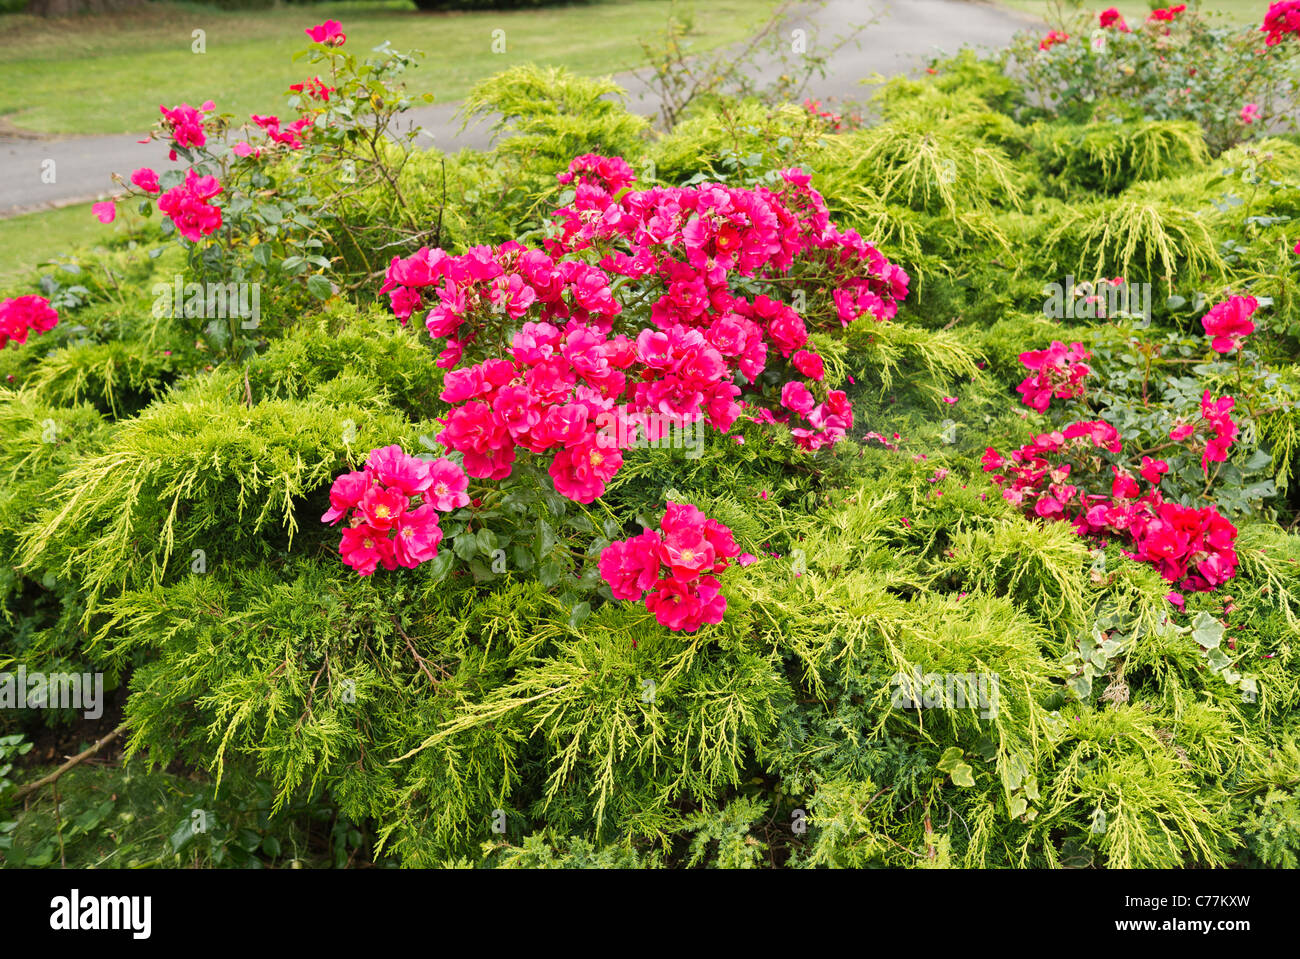 Gemischte Bepflanzung mit immergrünen Prostata Koniferen Inter mit rosa Cluster blühenden Rosen gepflanzt Stockfoto